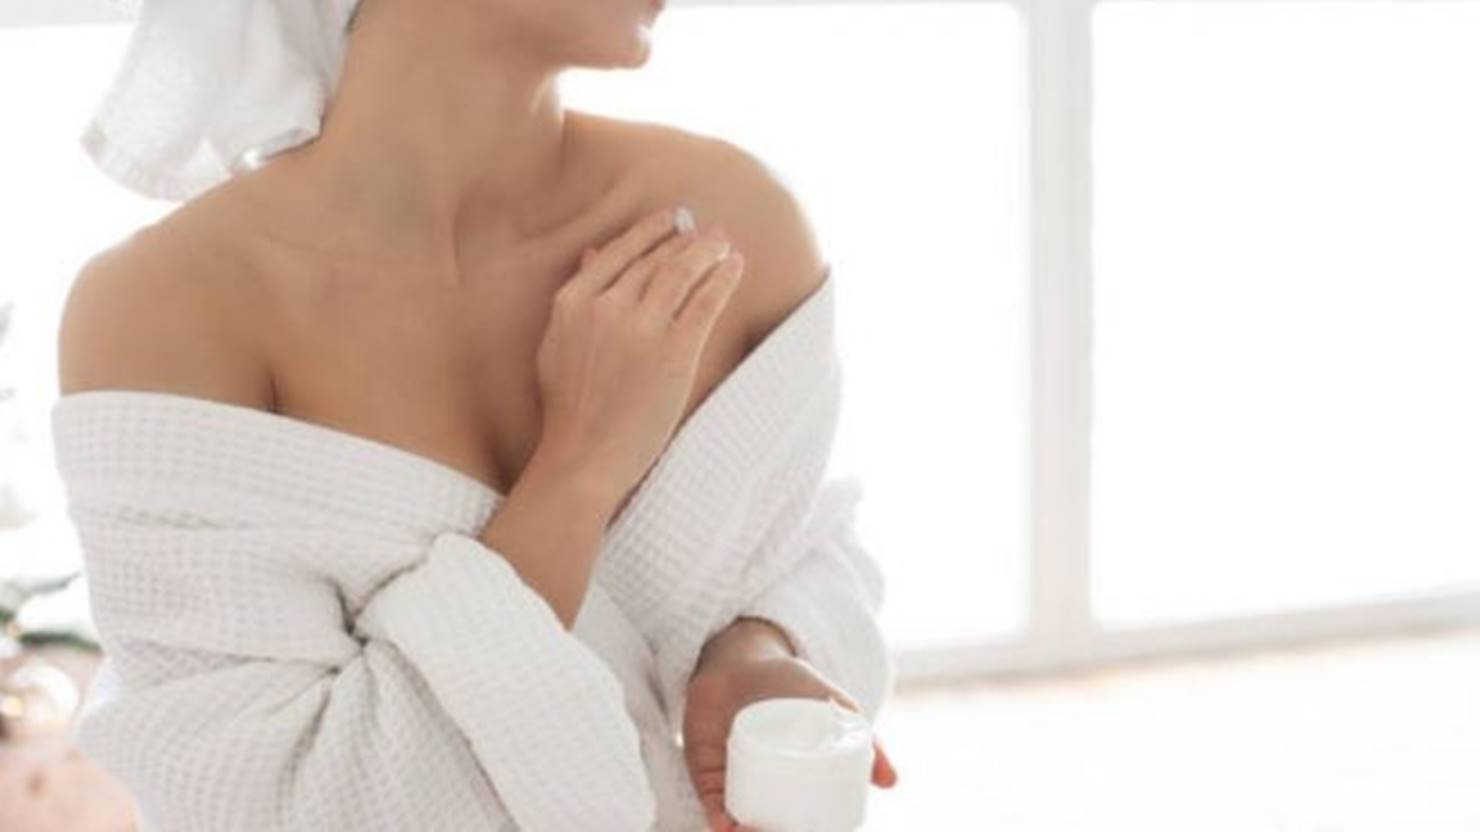 Erros comuns ao aplicar creme corporal na pele que devemos evitar